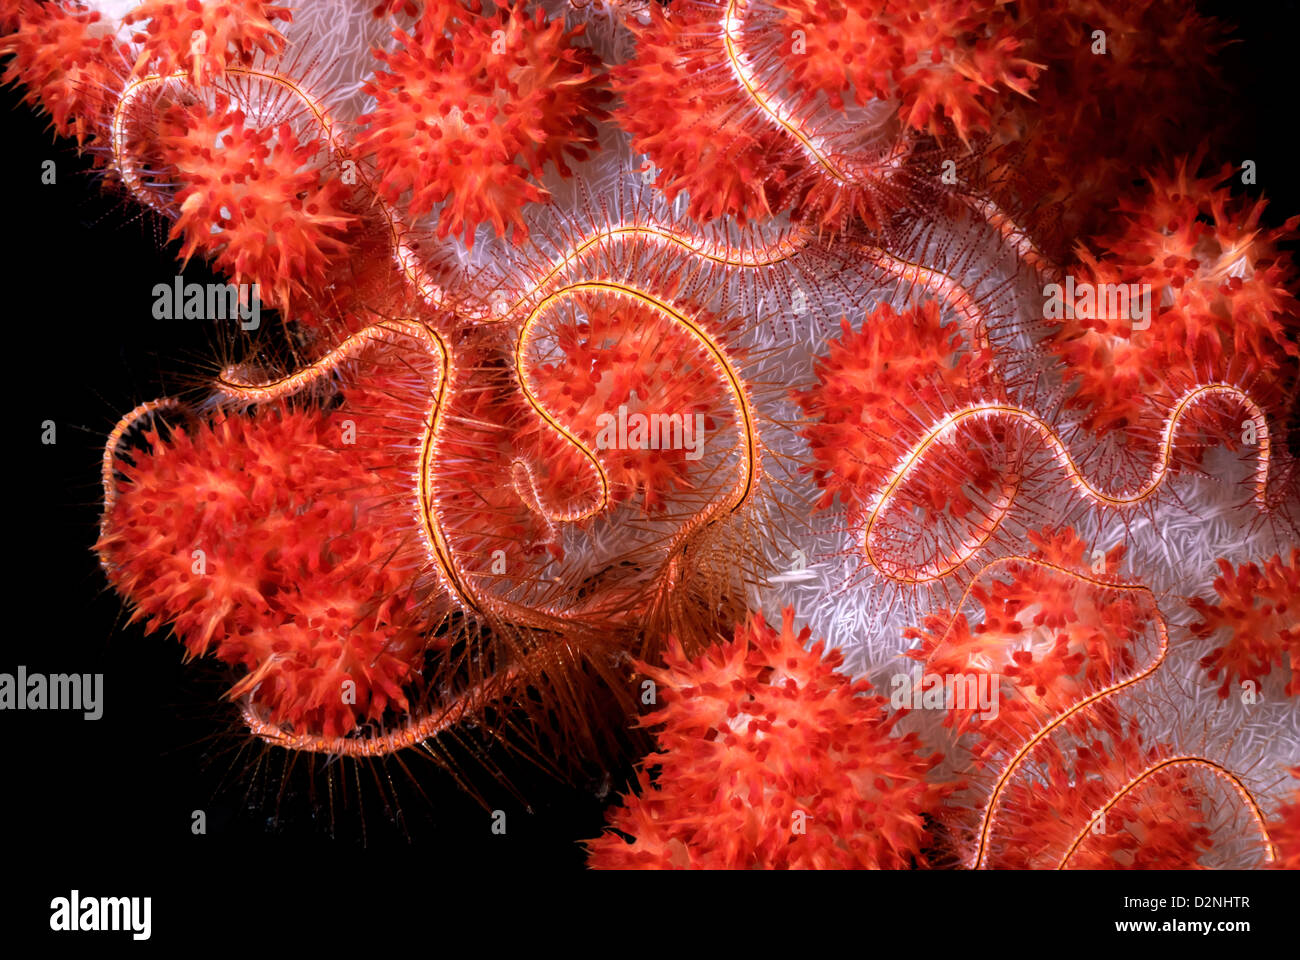 Schlangenstern Ophiothrix Purpurea Fütterung oder Aufräumvorgang auf weichen Korallen Dendronephthya, Coral Sea, Pazifik, Papua Neu Guinea Stockfoto